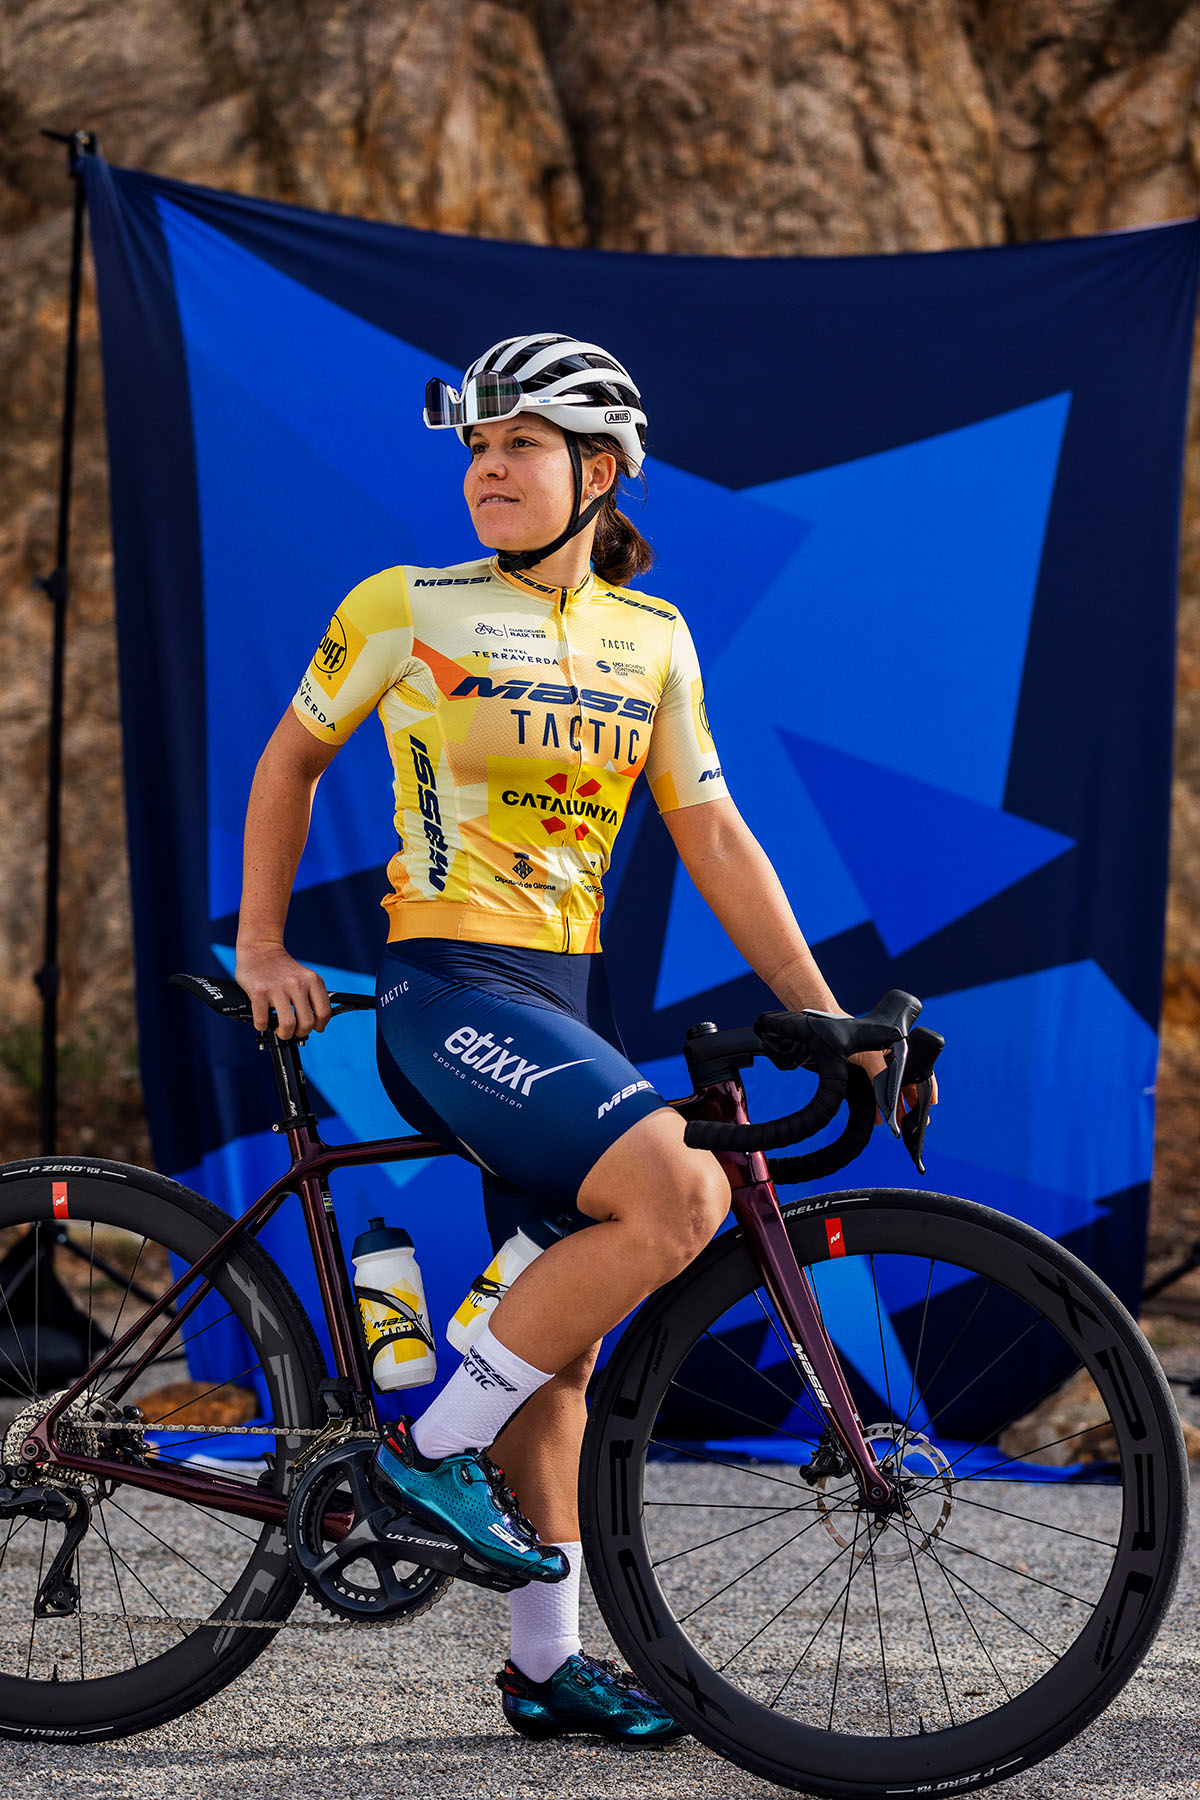 Le nouveau maillot 2023 pour l'équipe féminine UCI Massi-Tactic